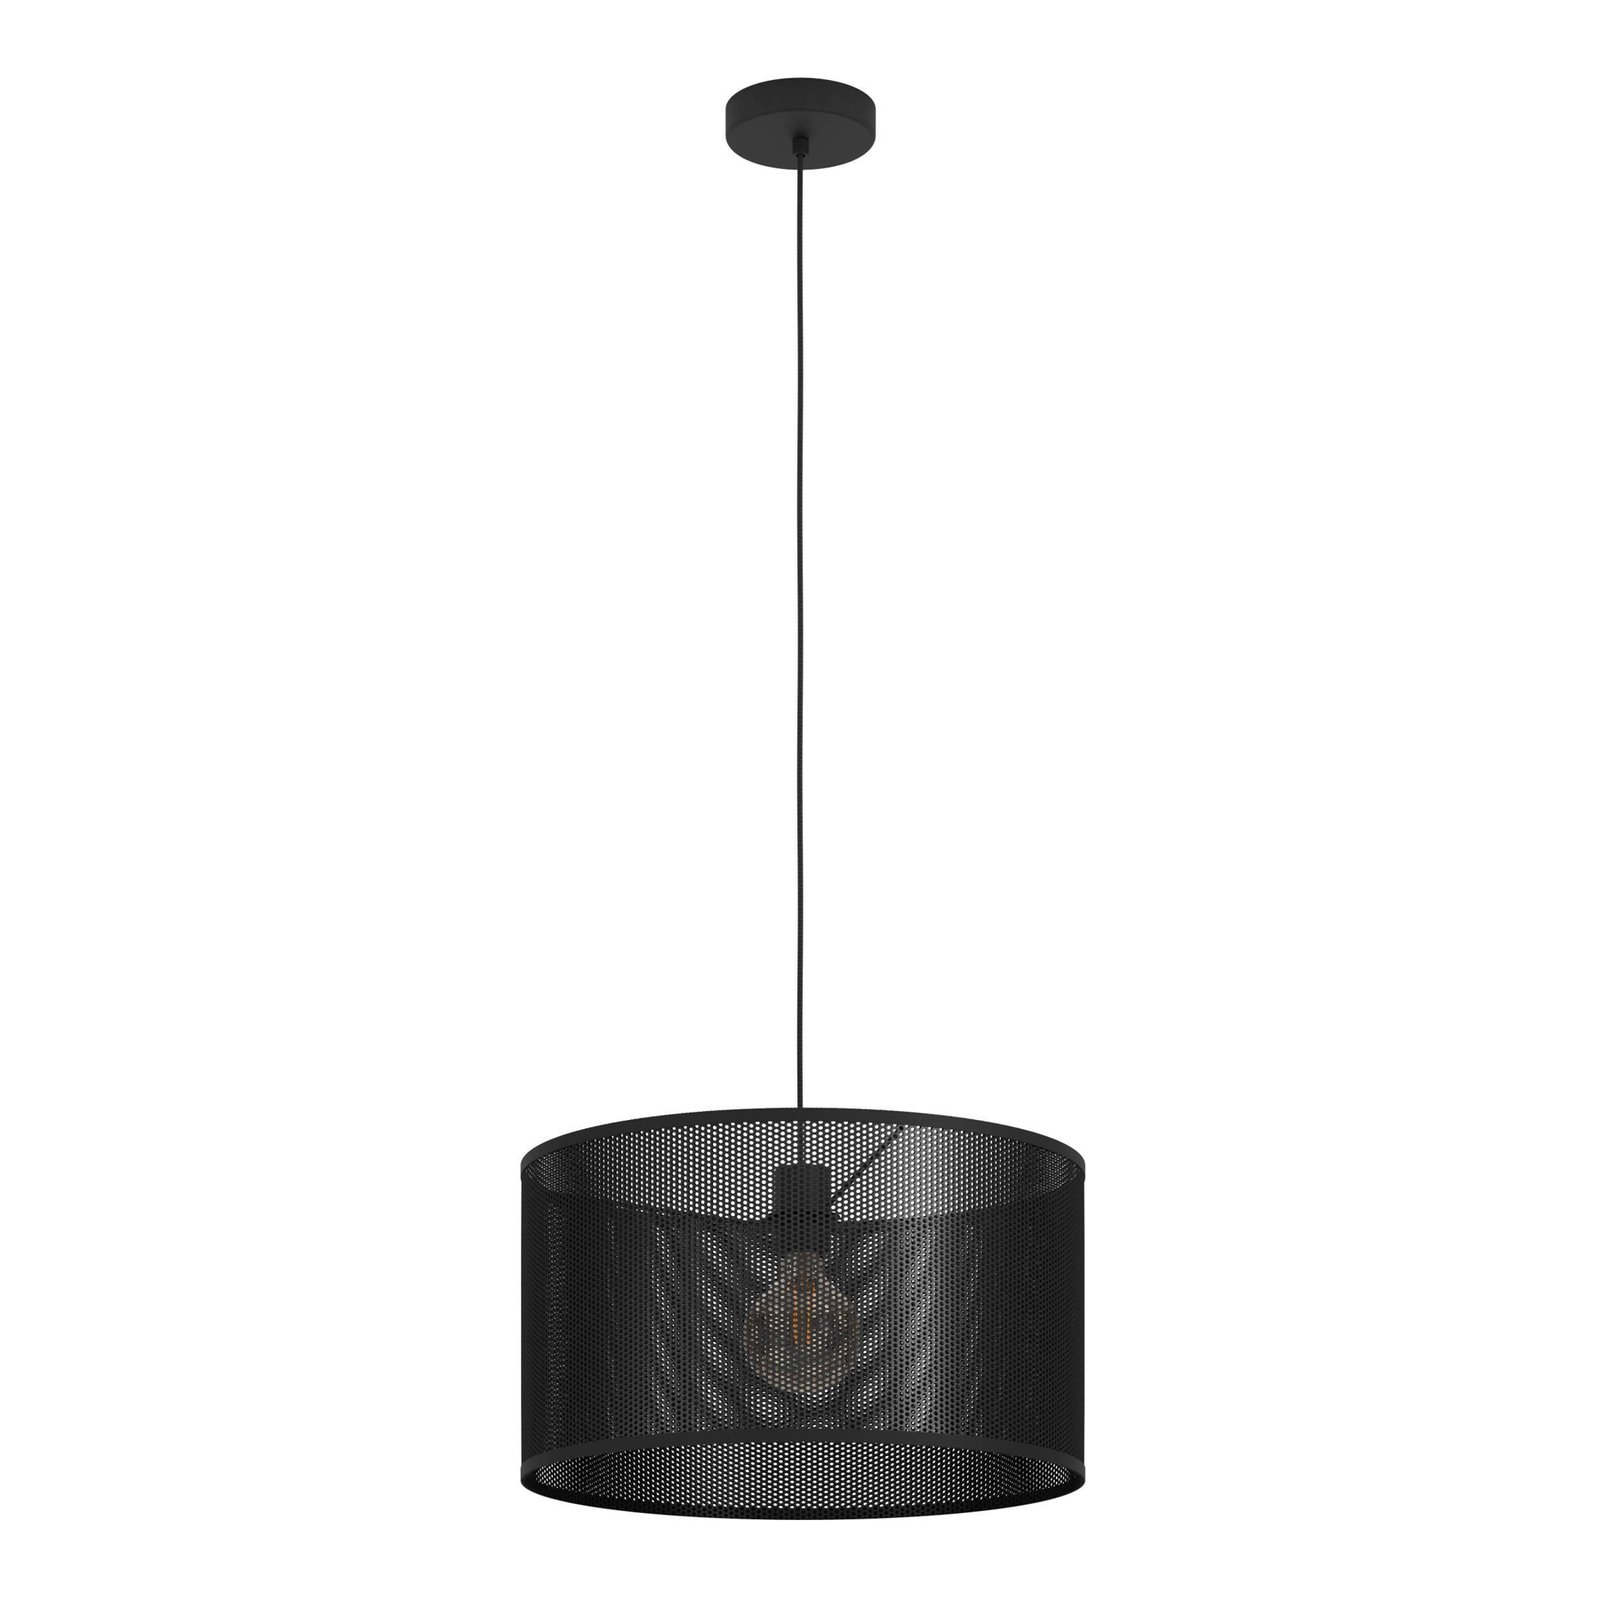 Manby viseća svjetiljka, Ø 45 cm, crna, čelik